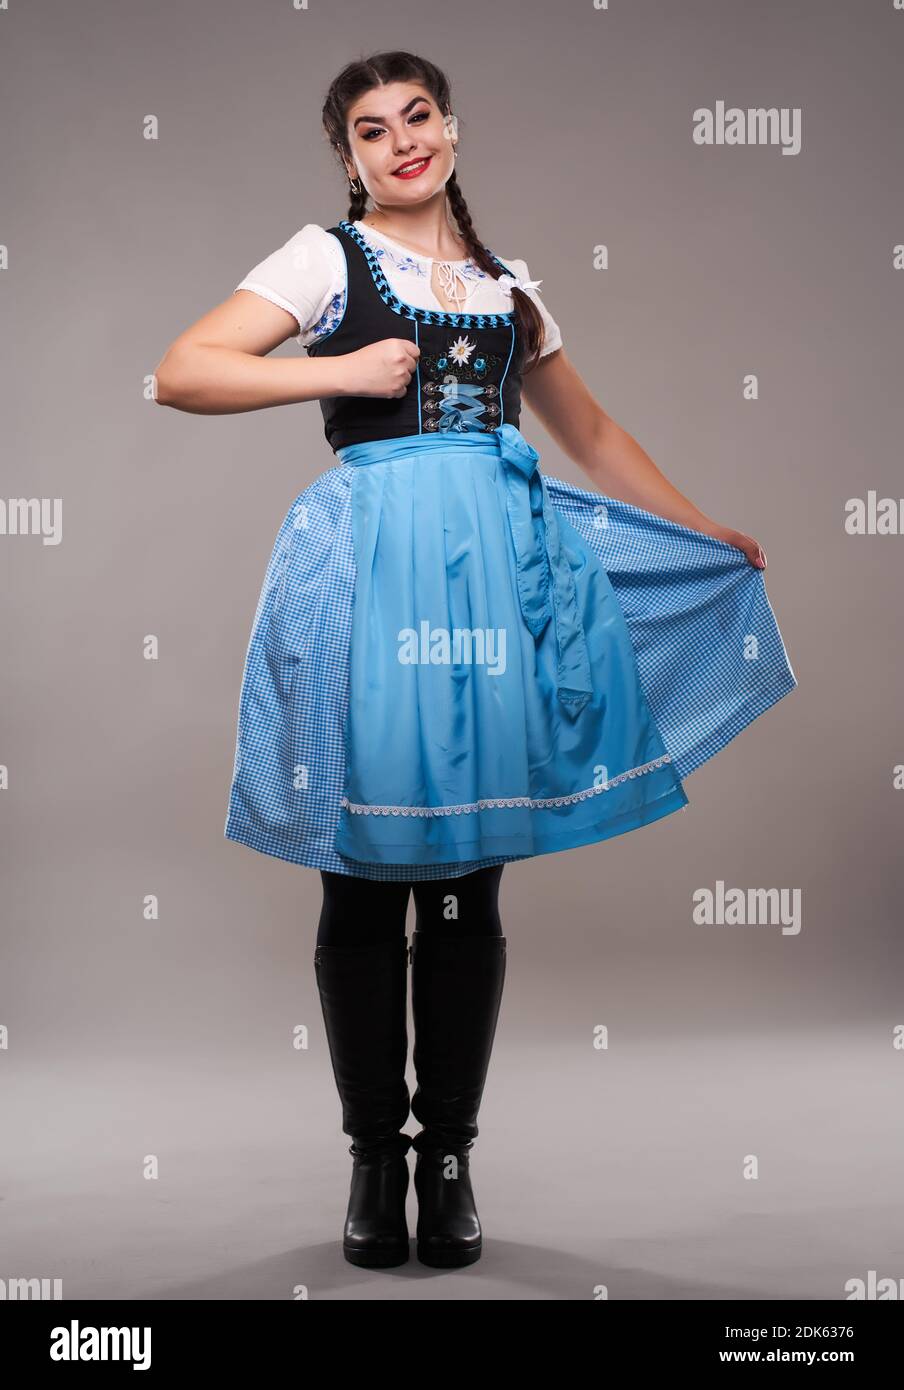 Jeune femme en costume traditionnel de folklore allemand, isolée sur fond  gris Photo Stock - Alamy